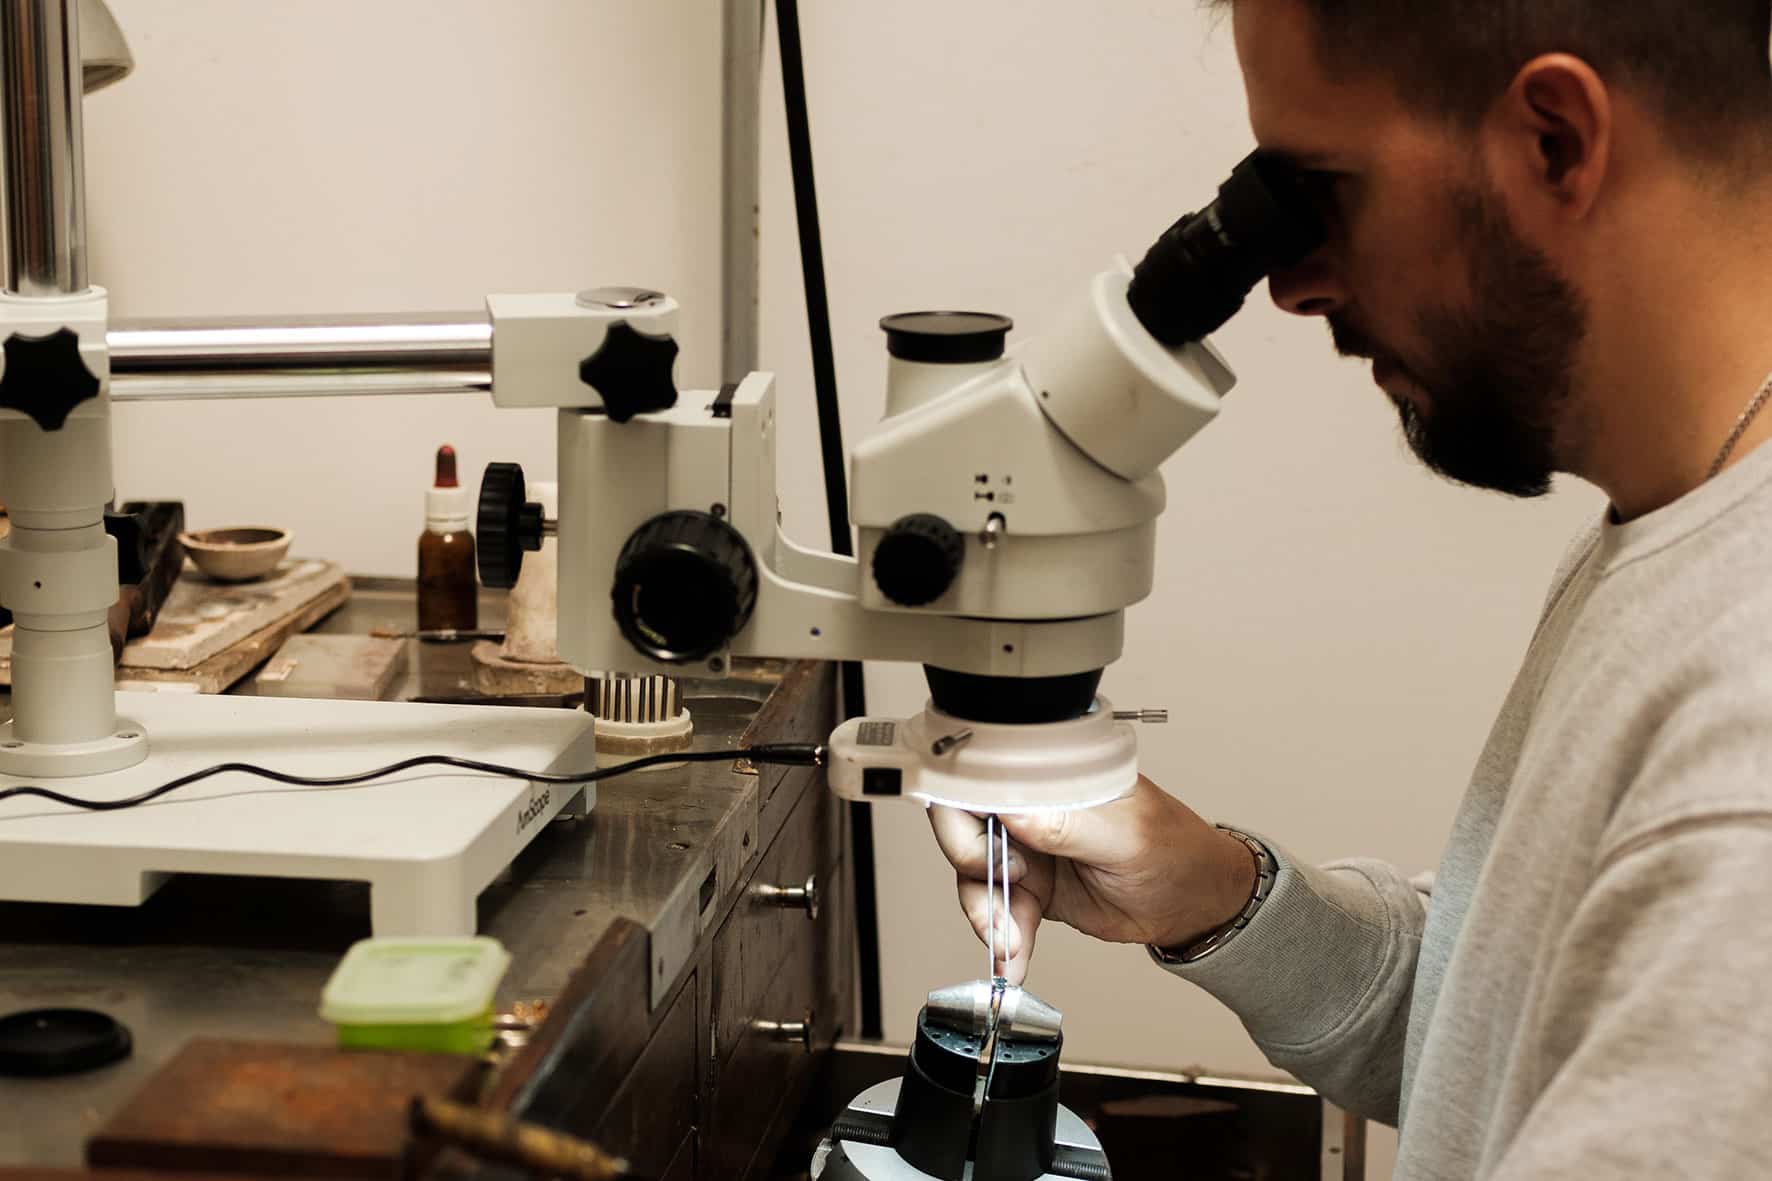 Romeu looks through the microscope.